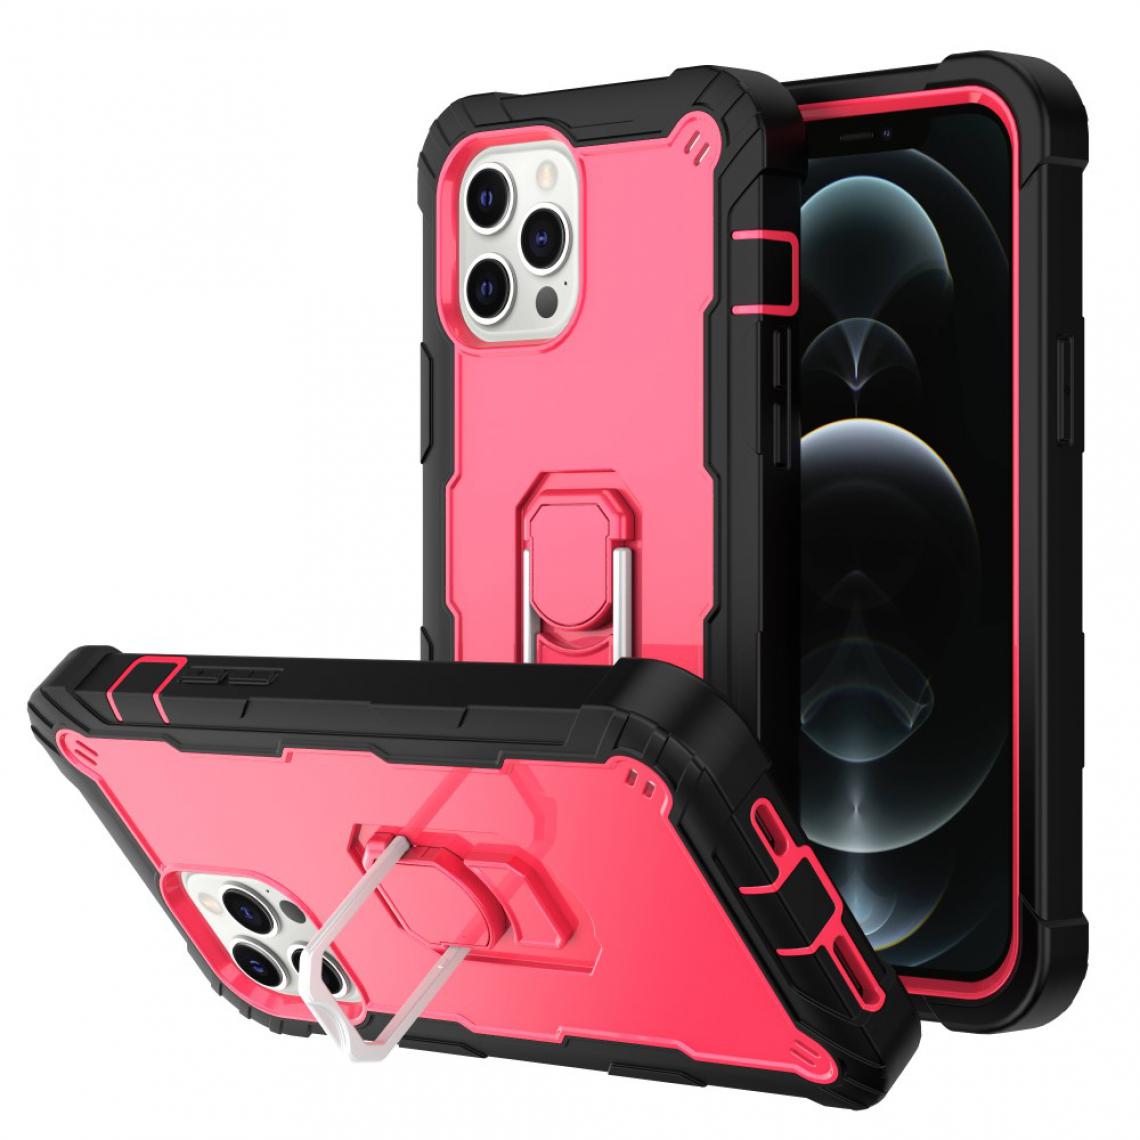 Other - Coque en TPU Hybride bicolore antichoc avec béquille intégrée Noir/Rose rouge pour votre Apple iPhone 12 Pro Max - Coque, étui smartphone